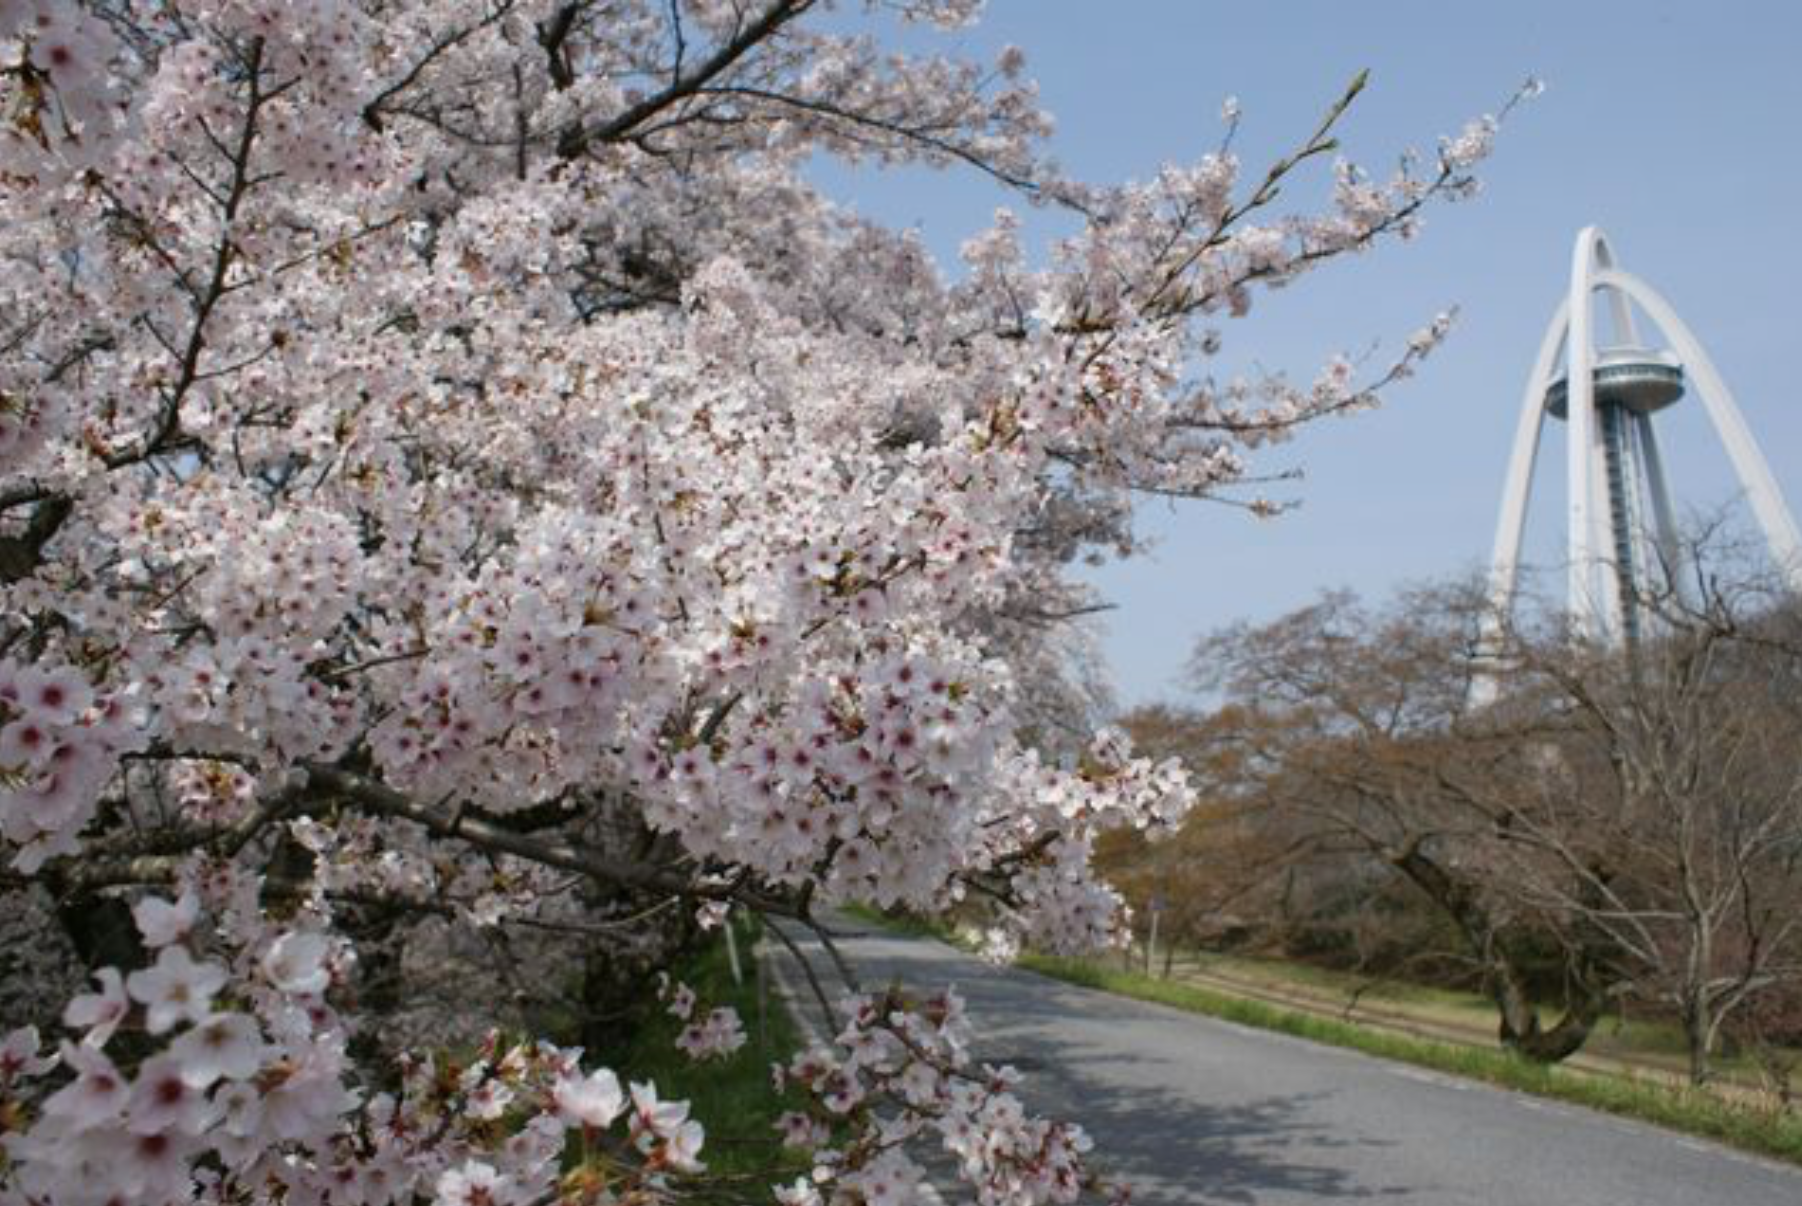 美しい桜で春を満喫。名古屋から行けるお花見スポット6選【2020】 - 512be76bb1fcf977b212278aee659b1f